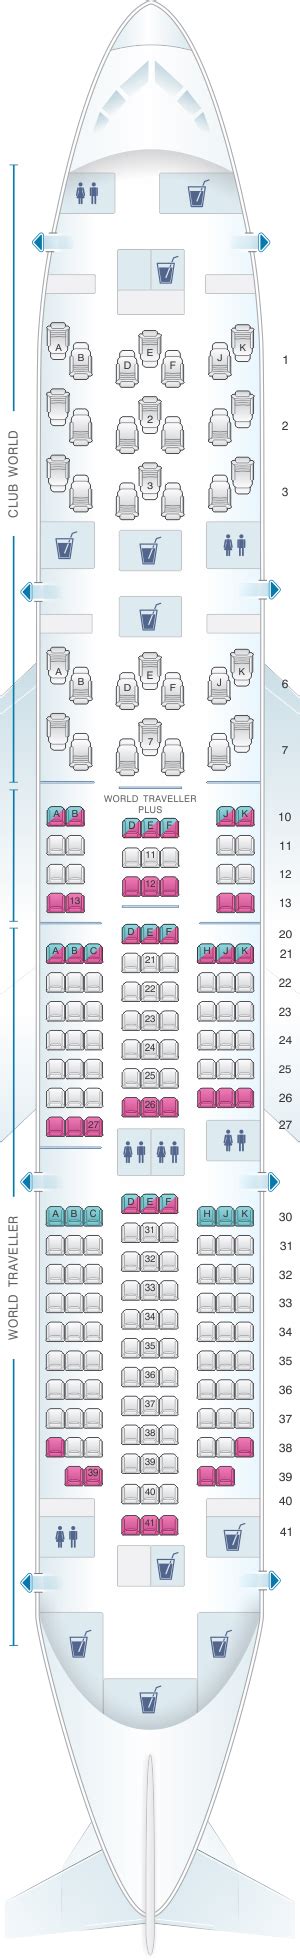 British Airways A380 Seat Map